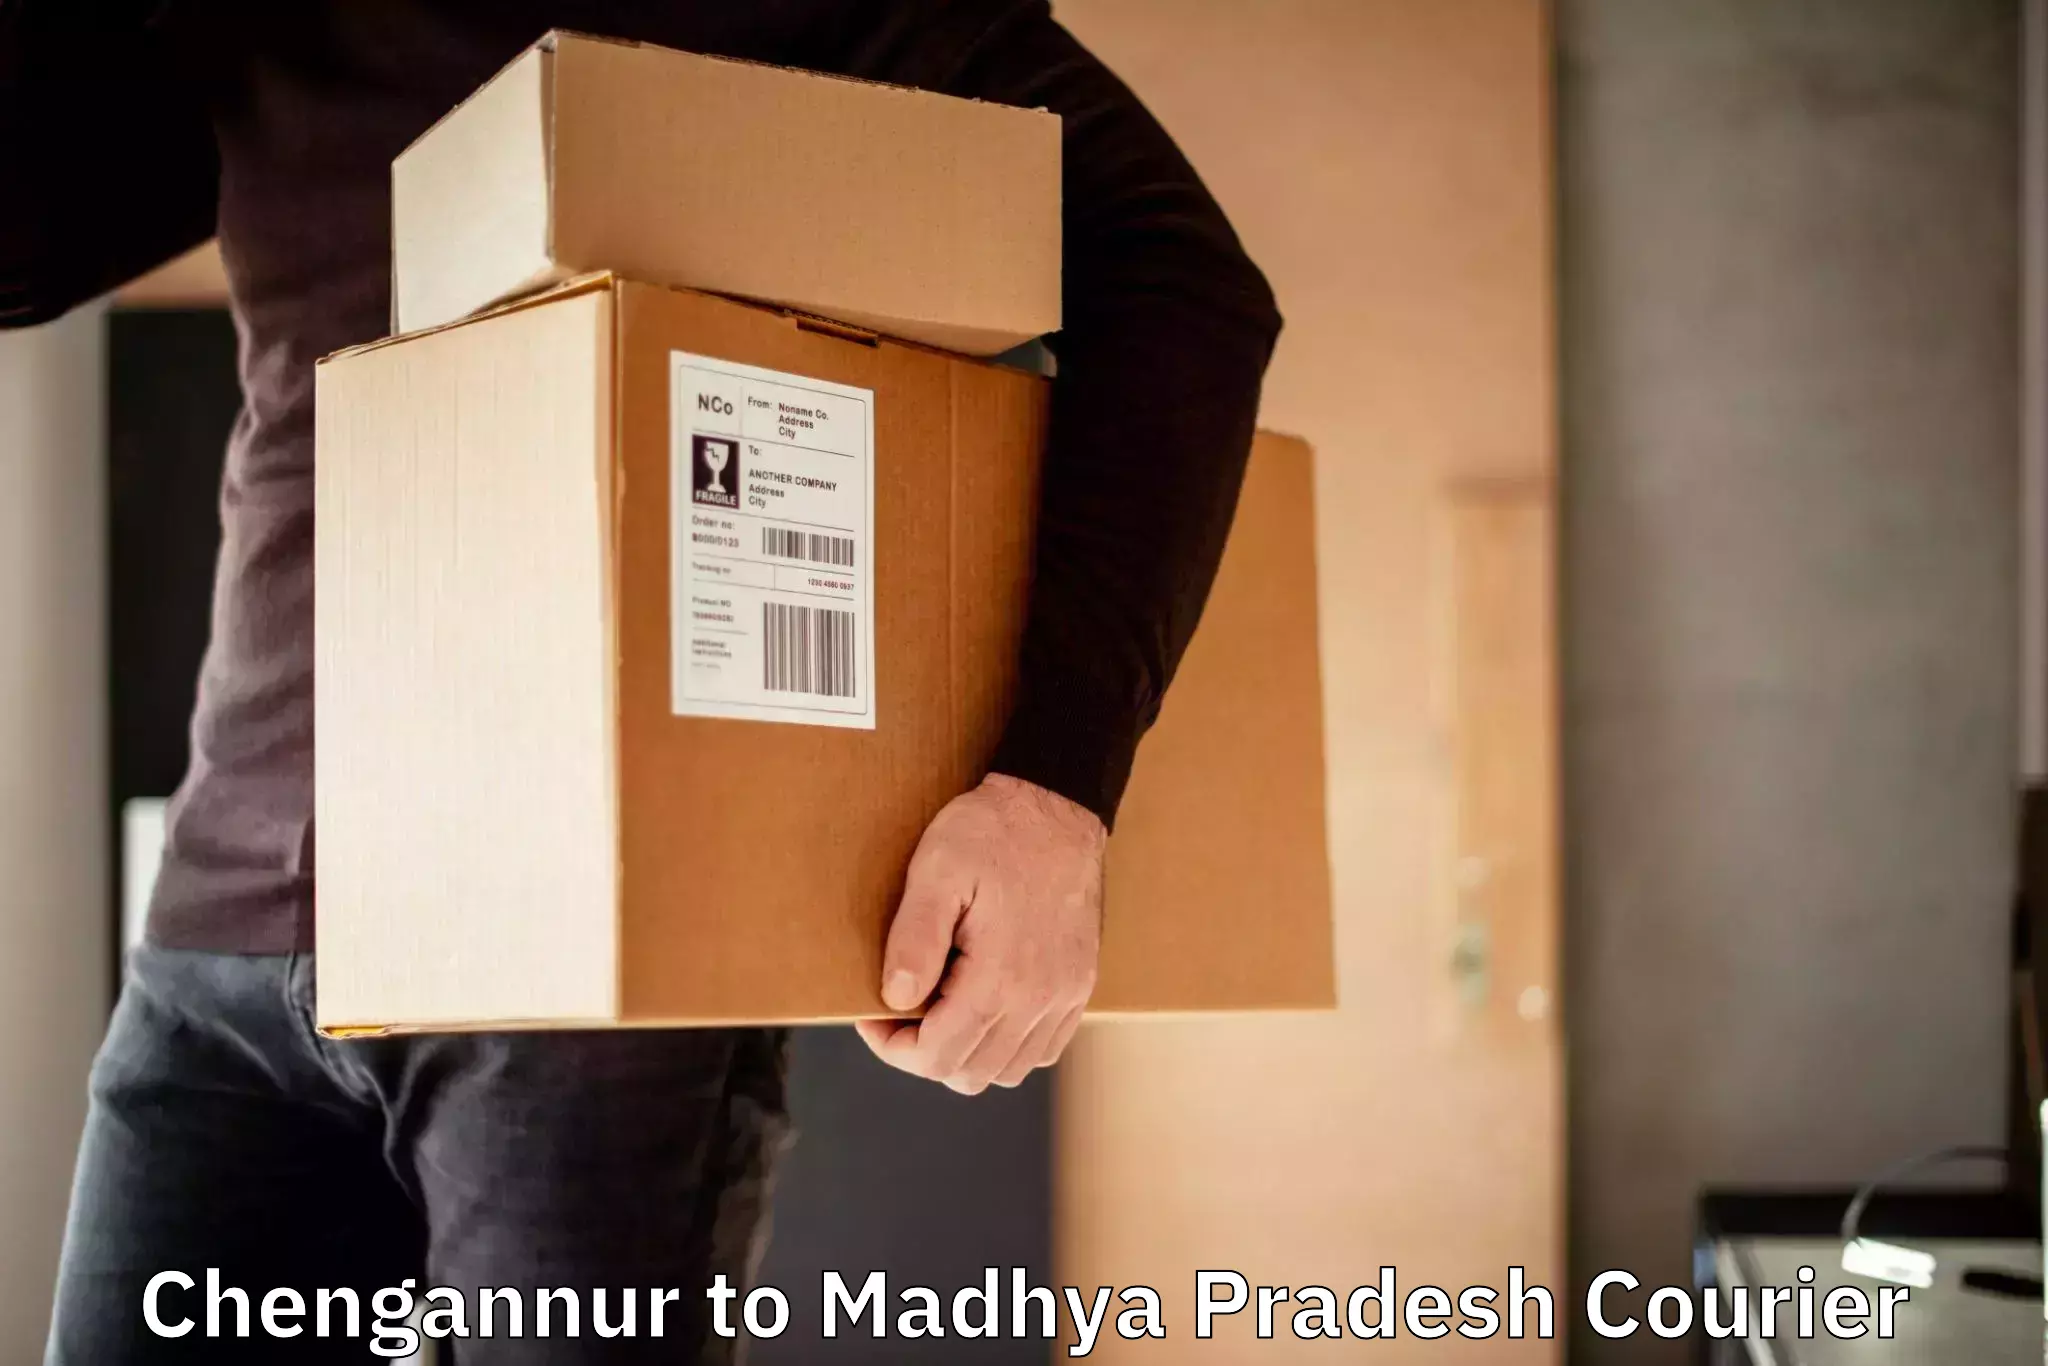 Tailored freight services Chengannur to Madhya Pradesh